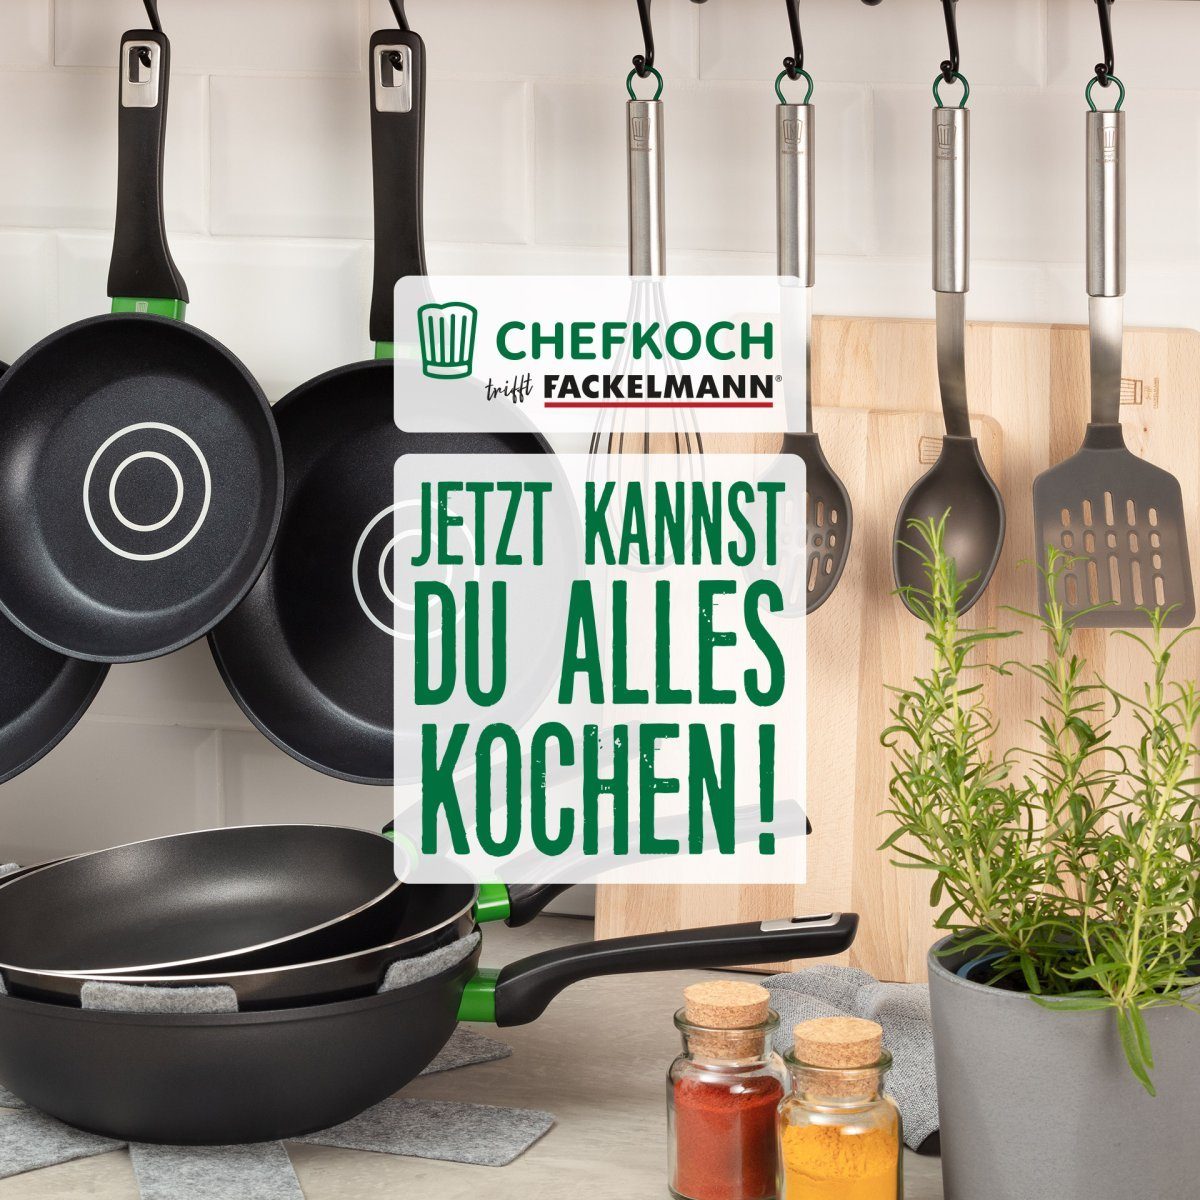 München Fackelmann Chefkoch trifft Kochbesteck-Set